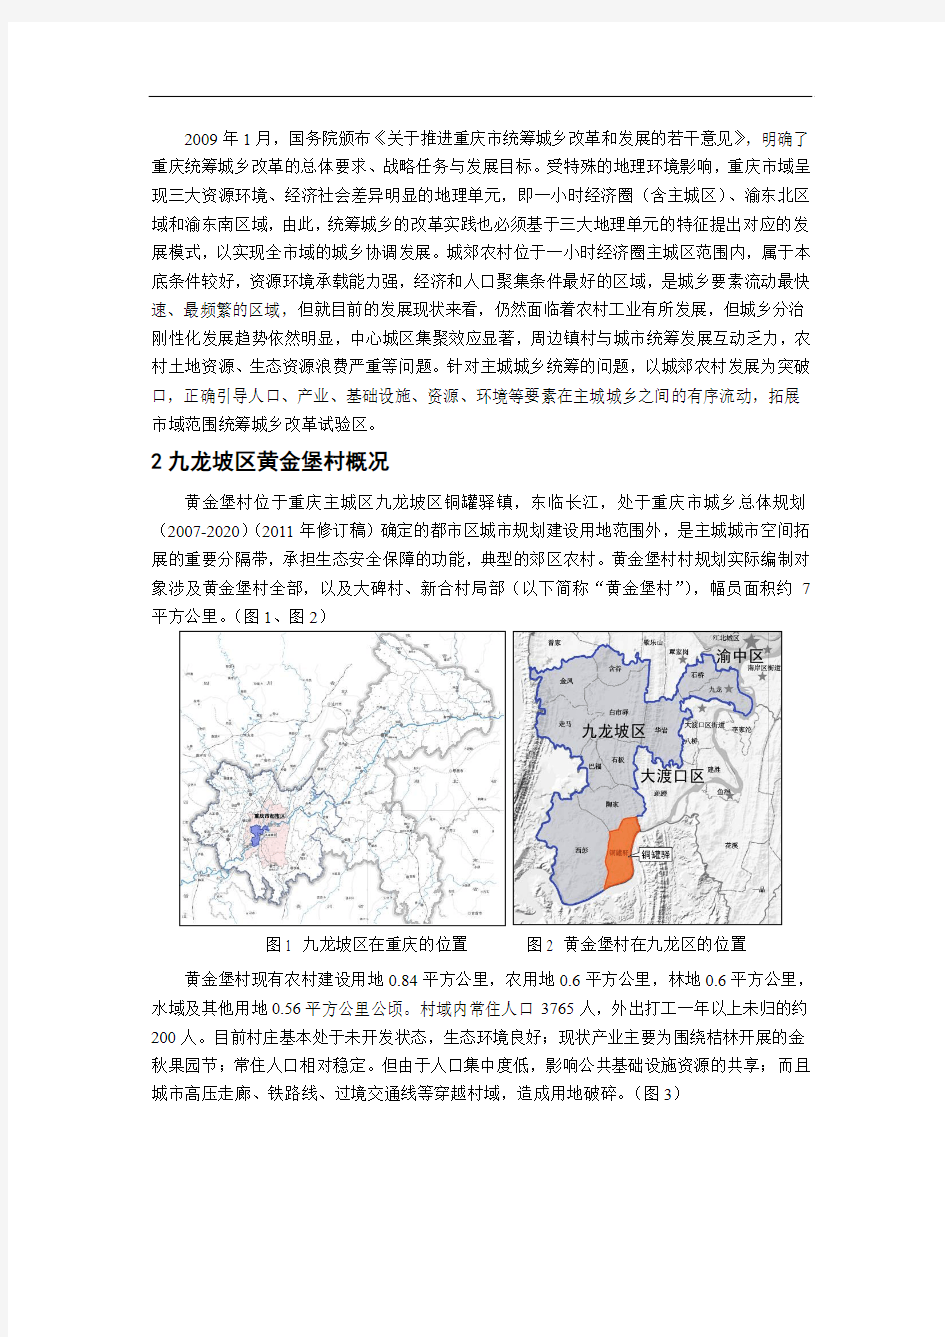 1424.城乡统筹下的重庆主城城郊农村规划探索——以《九龙坡区黄金堡村村规划(2010-2020年)》为例